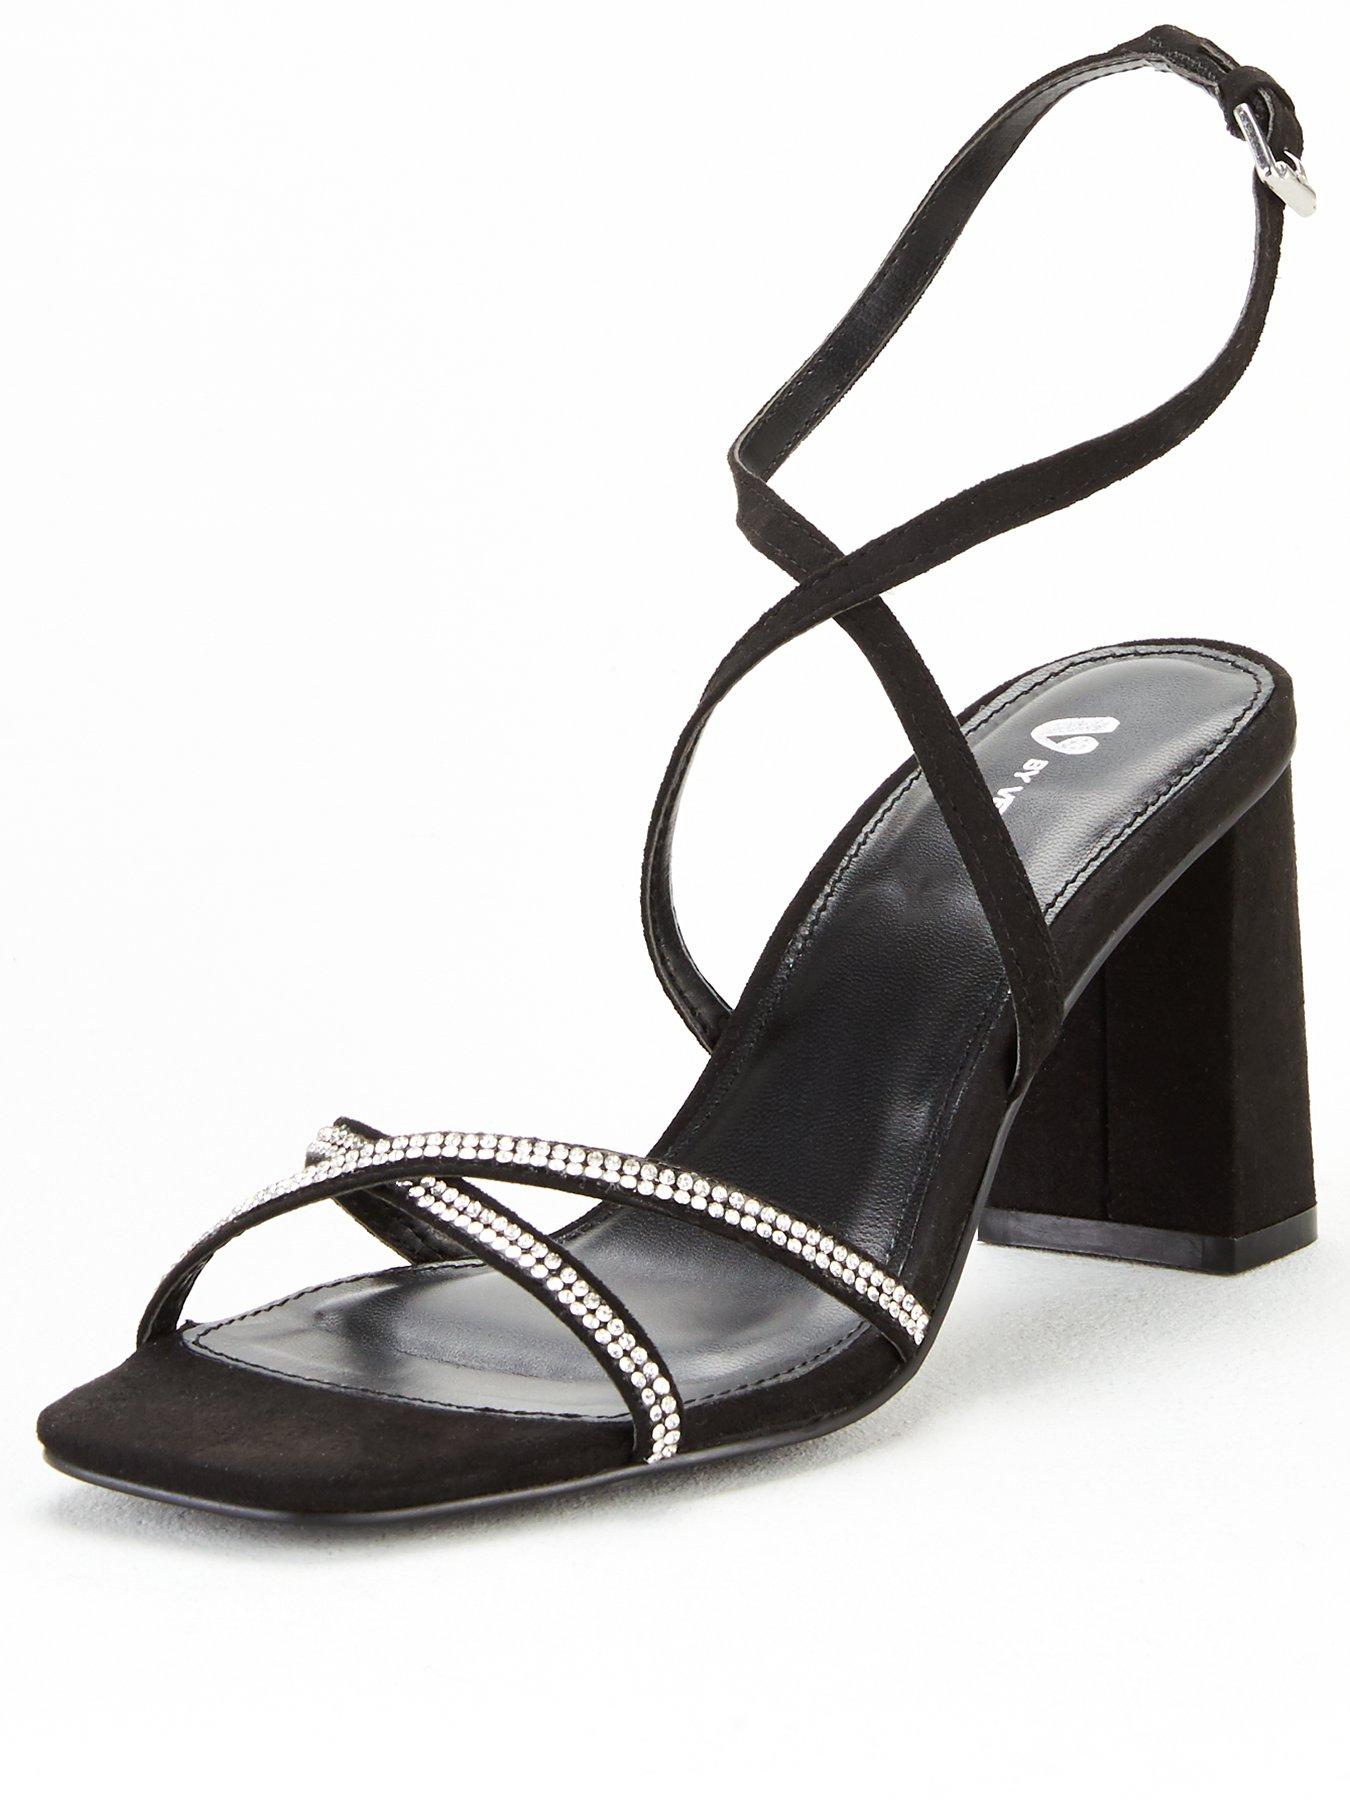 black heels ireland